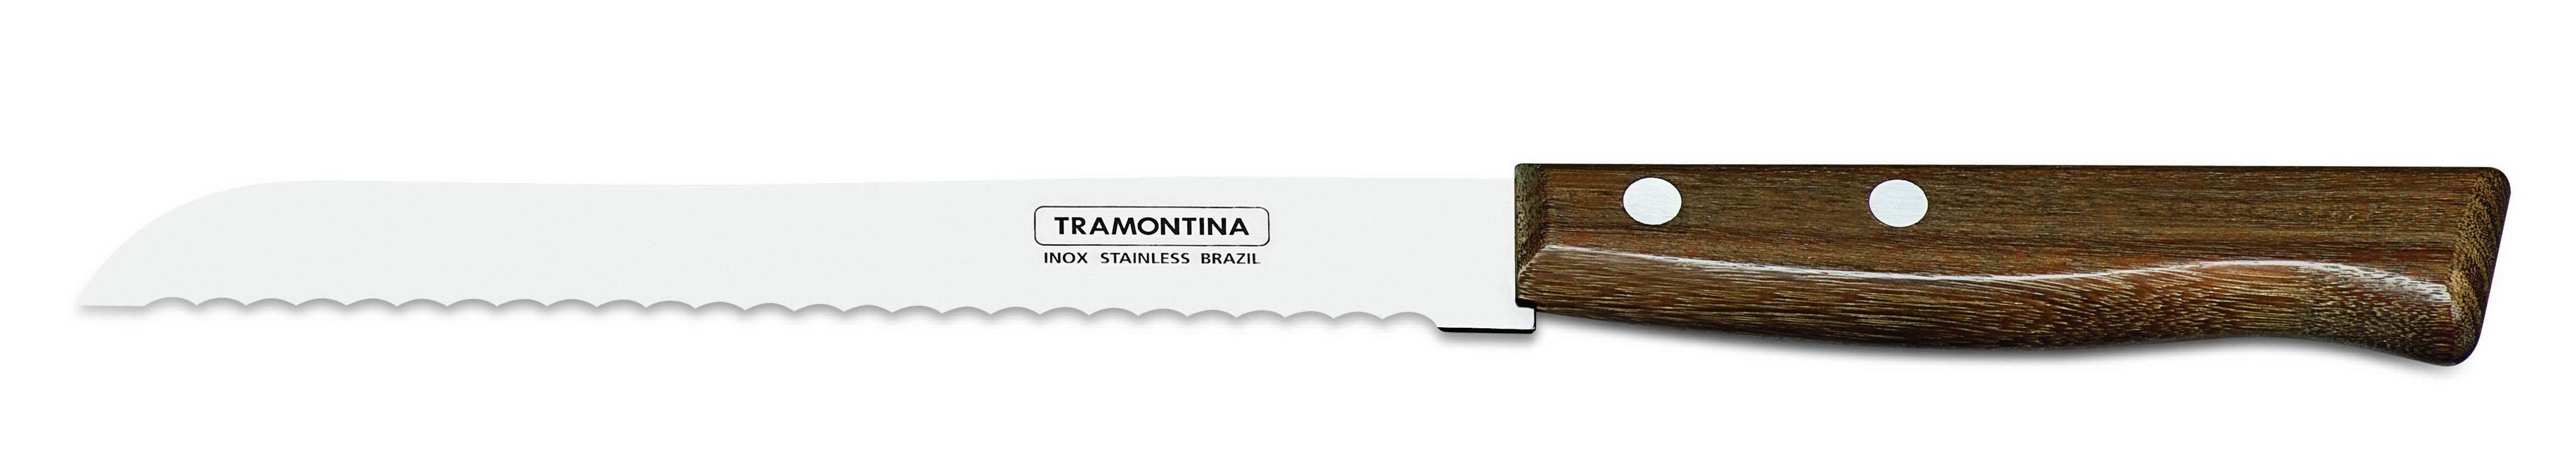 Μαχαίρι Ψωμιού Ανοξείδωτο Tradicional Tramontina 18εκ. TR22215007 (Υλικό: Ανοξείδωτο) - Tramontina - TR22215007